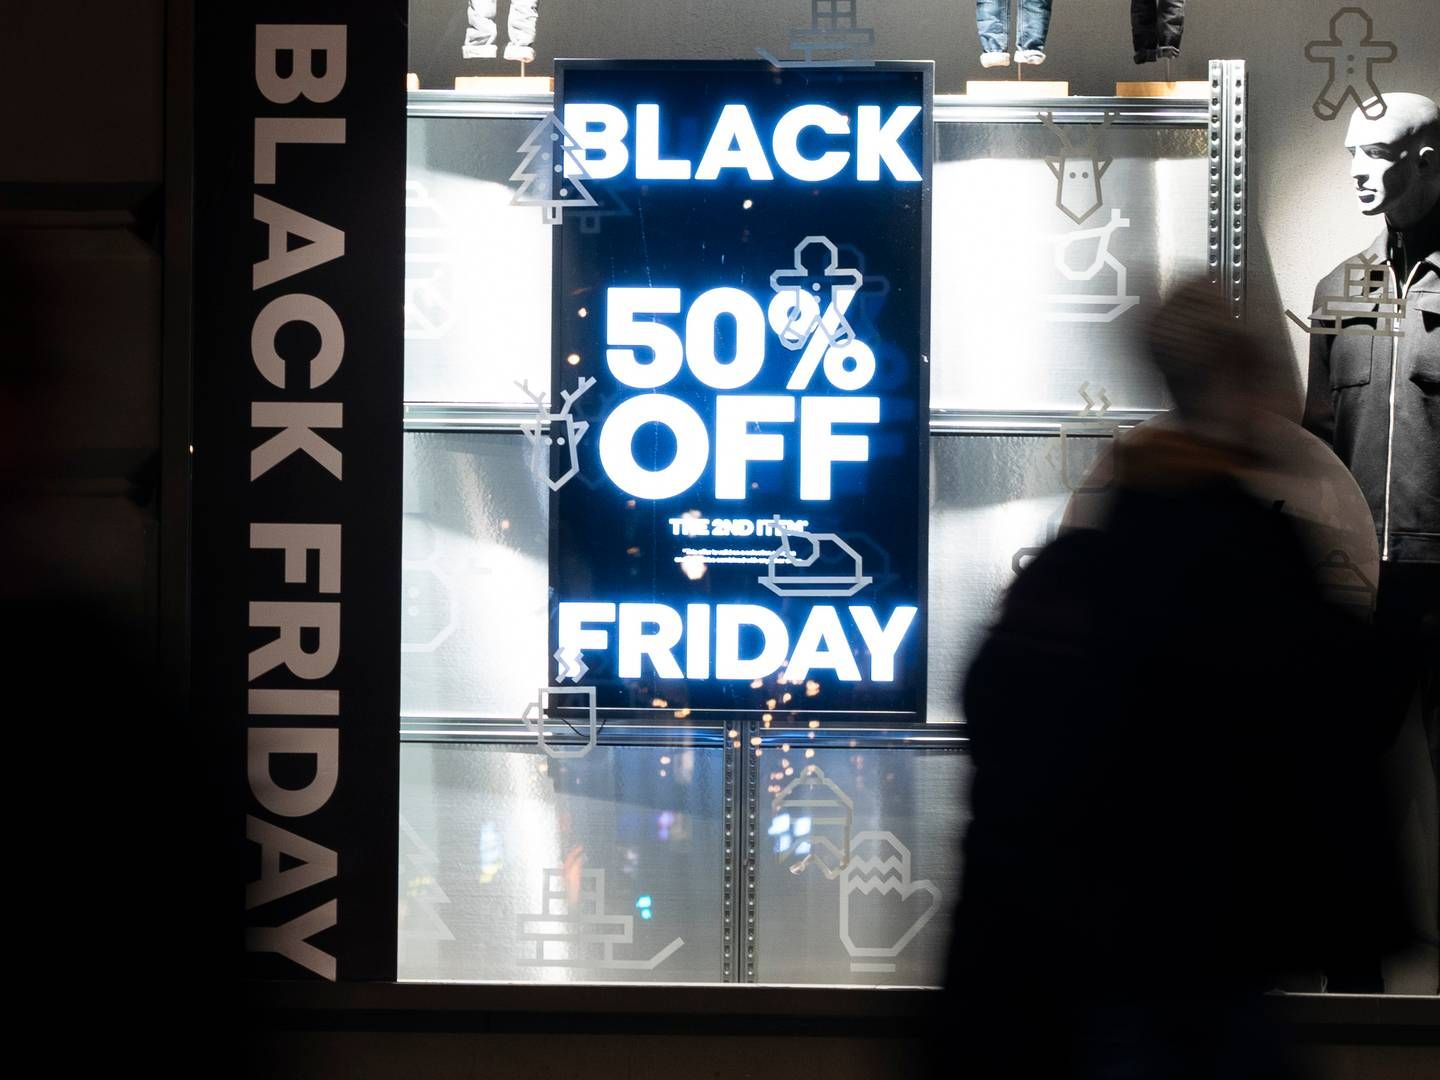 Black friday er de seneste år blevet udvidet til black week – eller nogle steder black month, hvilket ifølge Dansk Erhverv har fået forbrugernes mønstre til at ændre sig. | Foto: Erik Flaaris Johansen